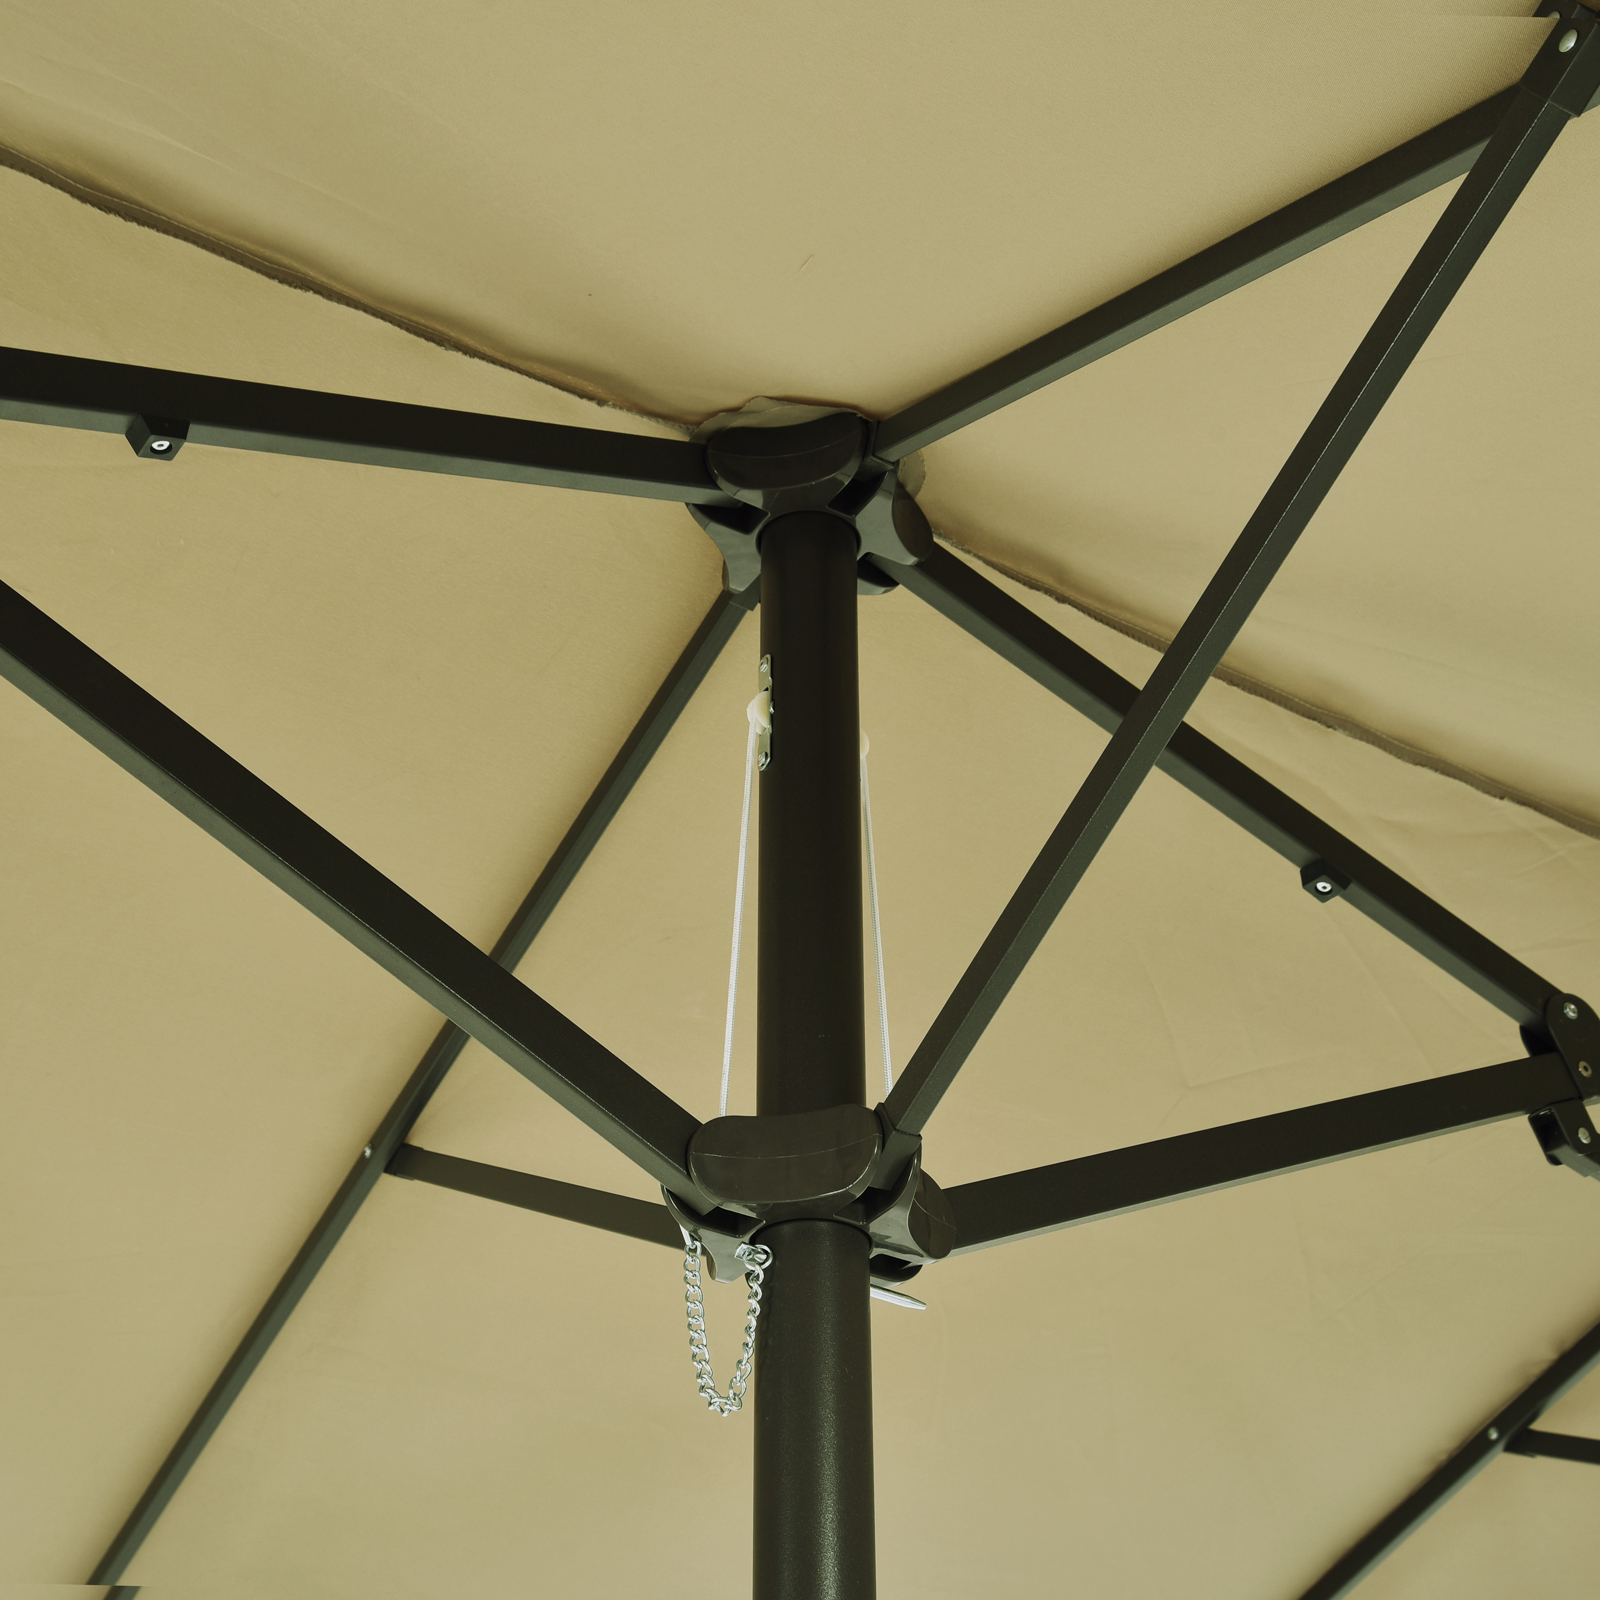 Outsunny 4.6m Garden Parasol Double-Sided Sun Umbrella Patio Market Shelter Canopy Shade Outdoor Tan - NO BASE